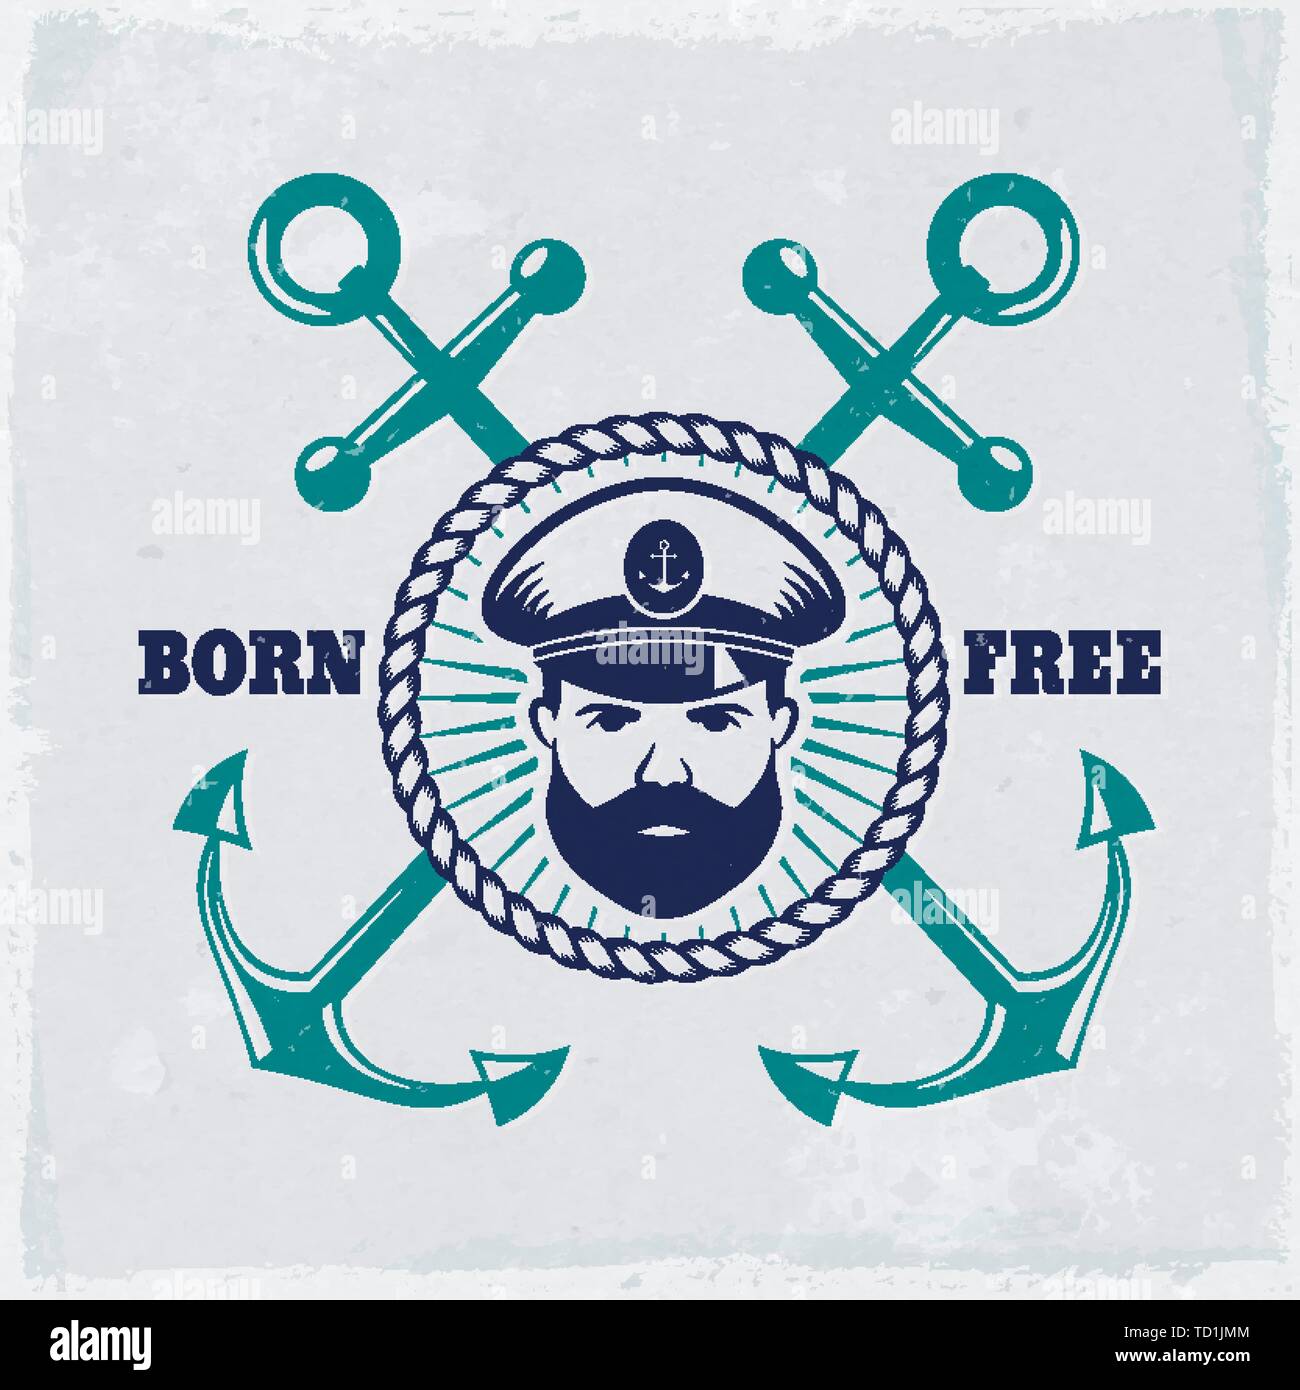 Emblema d'epoca con ancore, capitano di mare e slogan "nato libero". Banner nautico con fondo grunge. Elegante design t-shirt, etichetta marina. Illustrazione Vettoriale